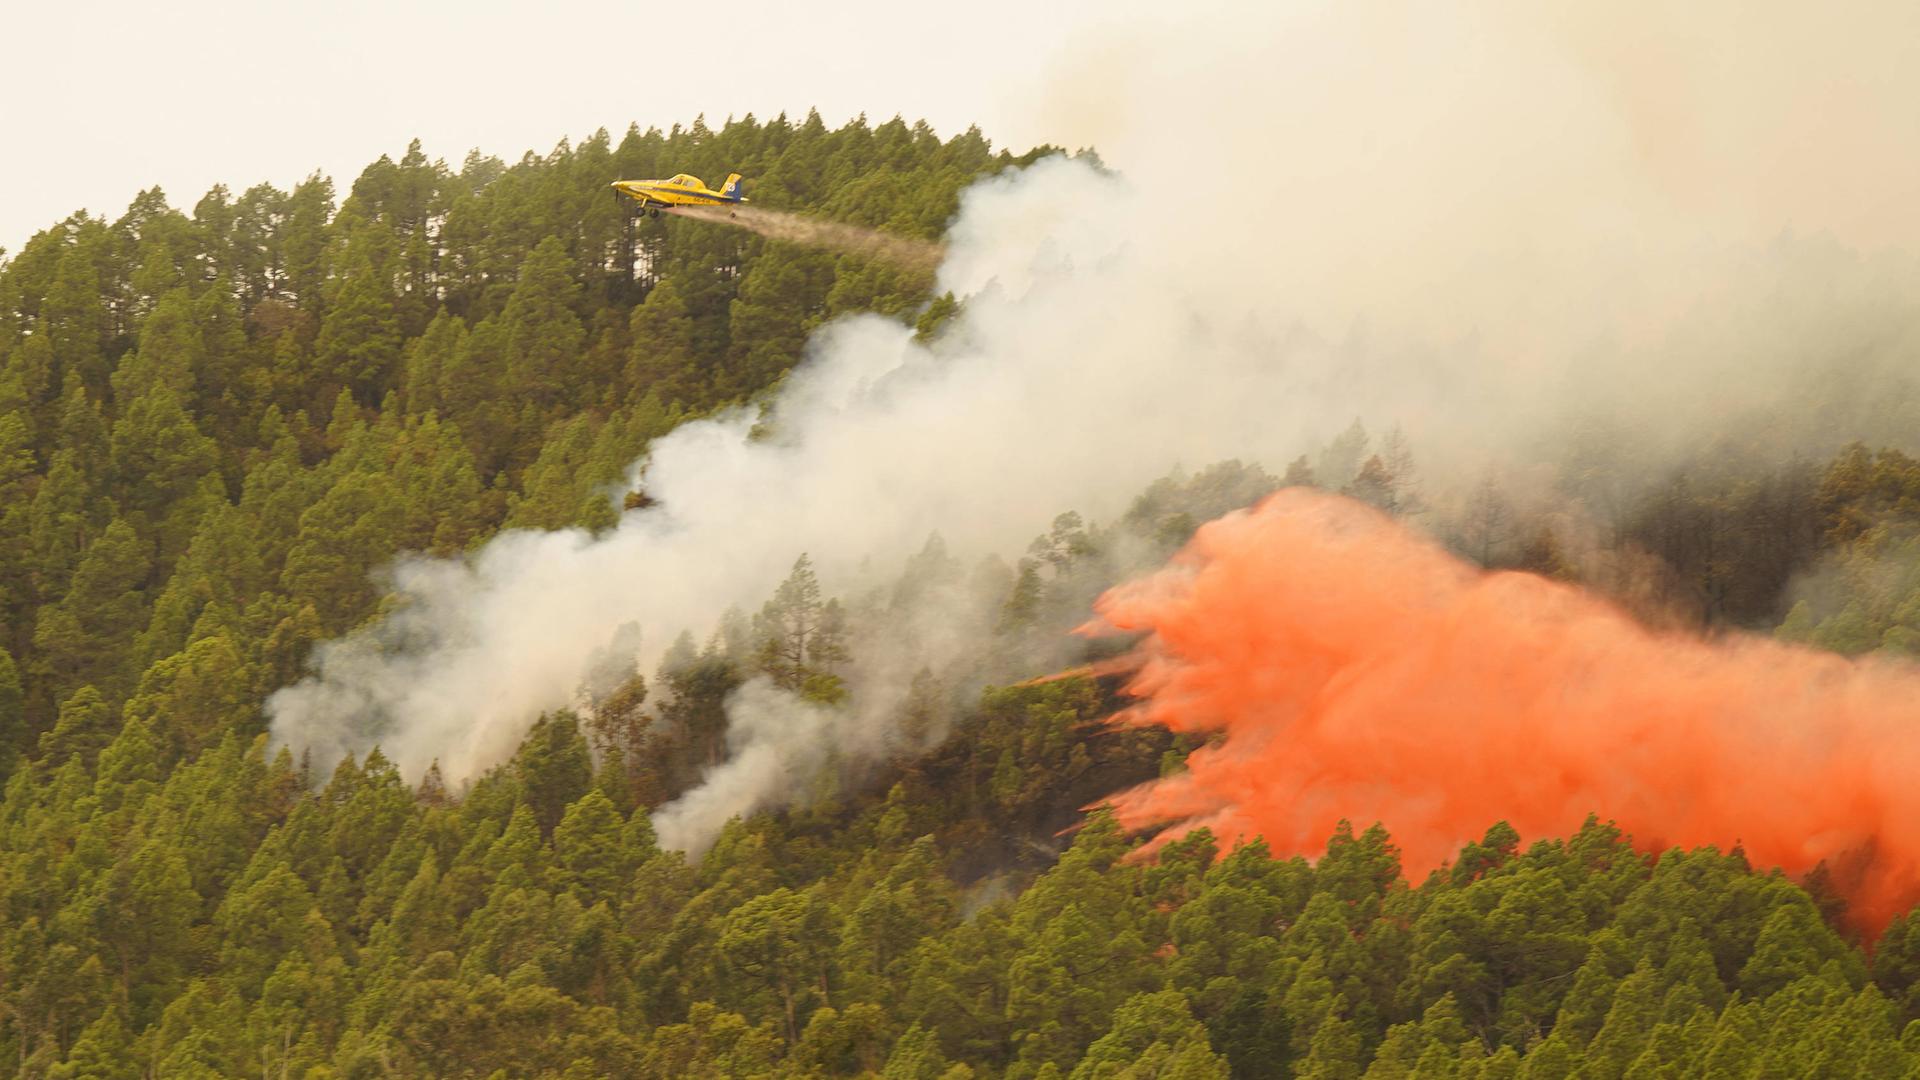 7600 Personen wurden wegen Waldbränden von der Kanareninsel Teneriffa evakuiert. Ein Flugzeug versucht die Brände mit Wasser eiinzudämmen.